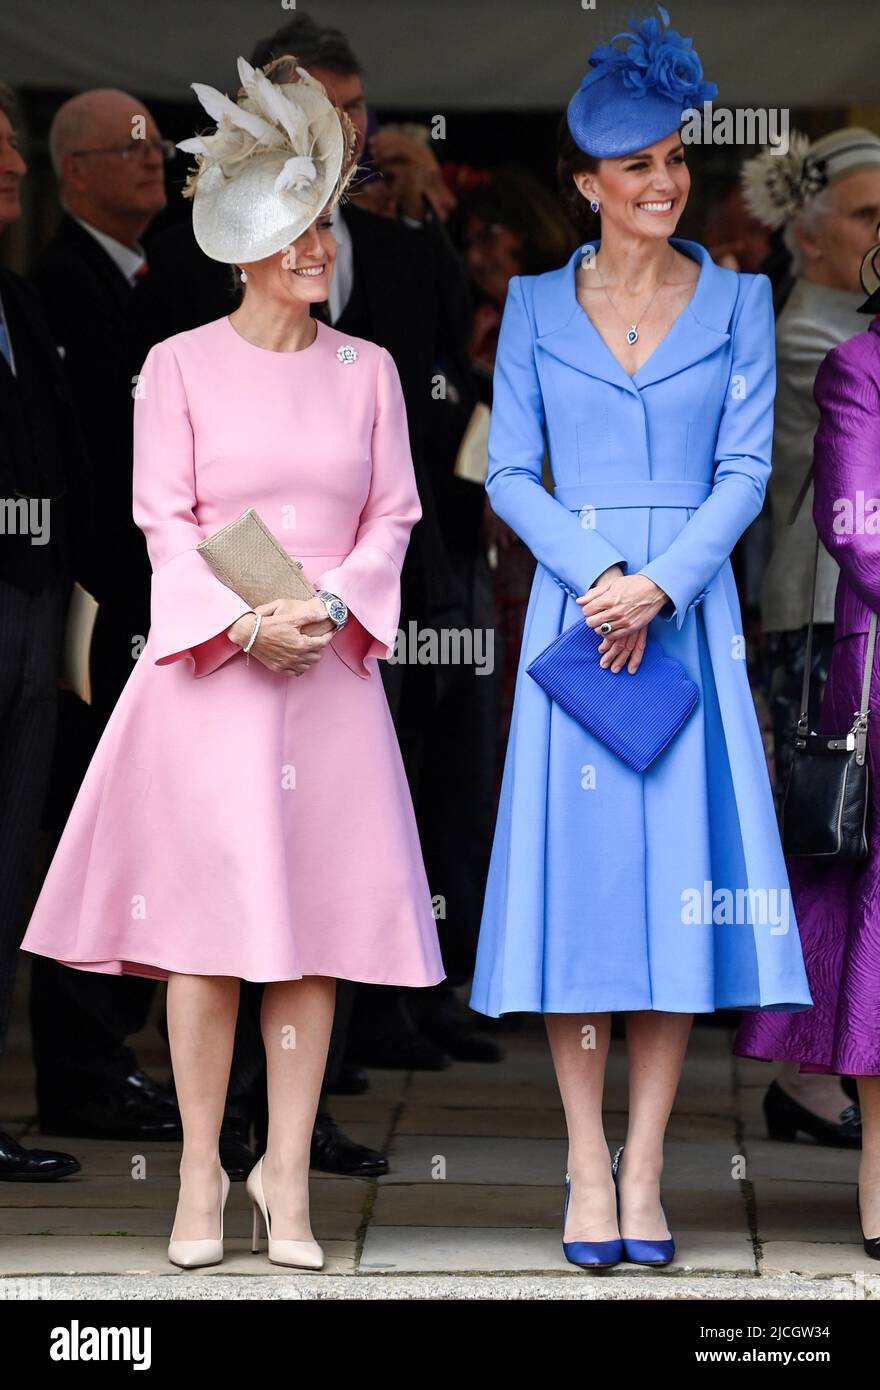 Herzogin von Cambridge (rechts) und die Gräfin von Wessex während des jährlichen Trauerordens in der St. George's Chapel, Windsor Castle. Bilddatum: Montag, 13. Juni 2022. Stockfoto